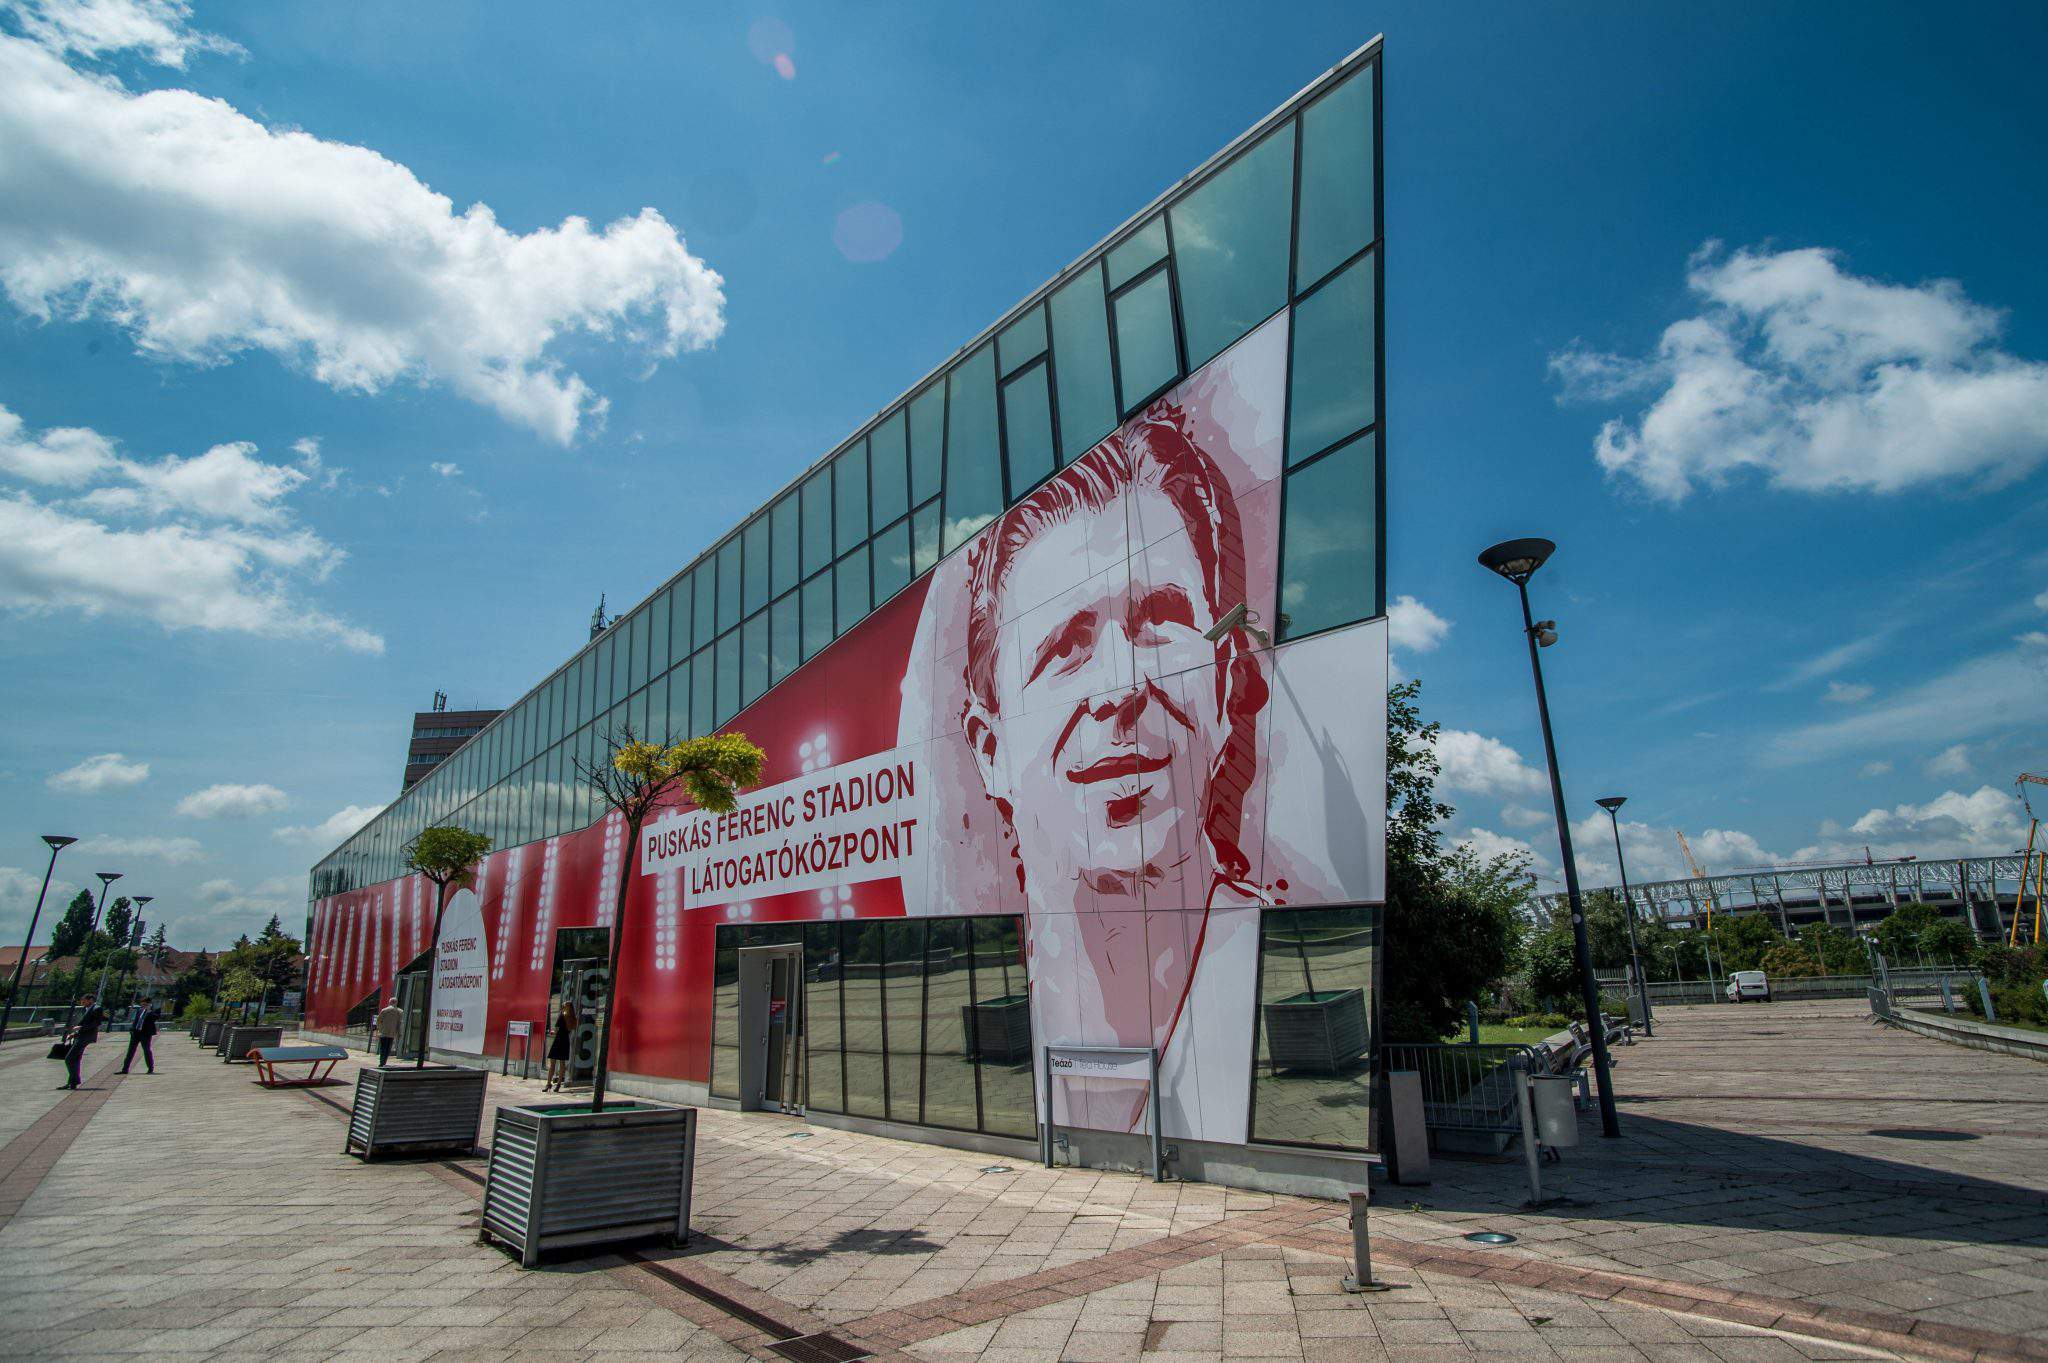 Se deschide centrul de vizitatori al stadionului Puskas Ferenc